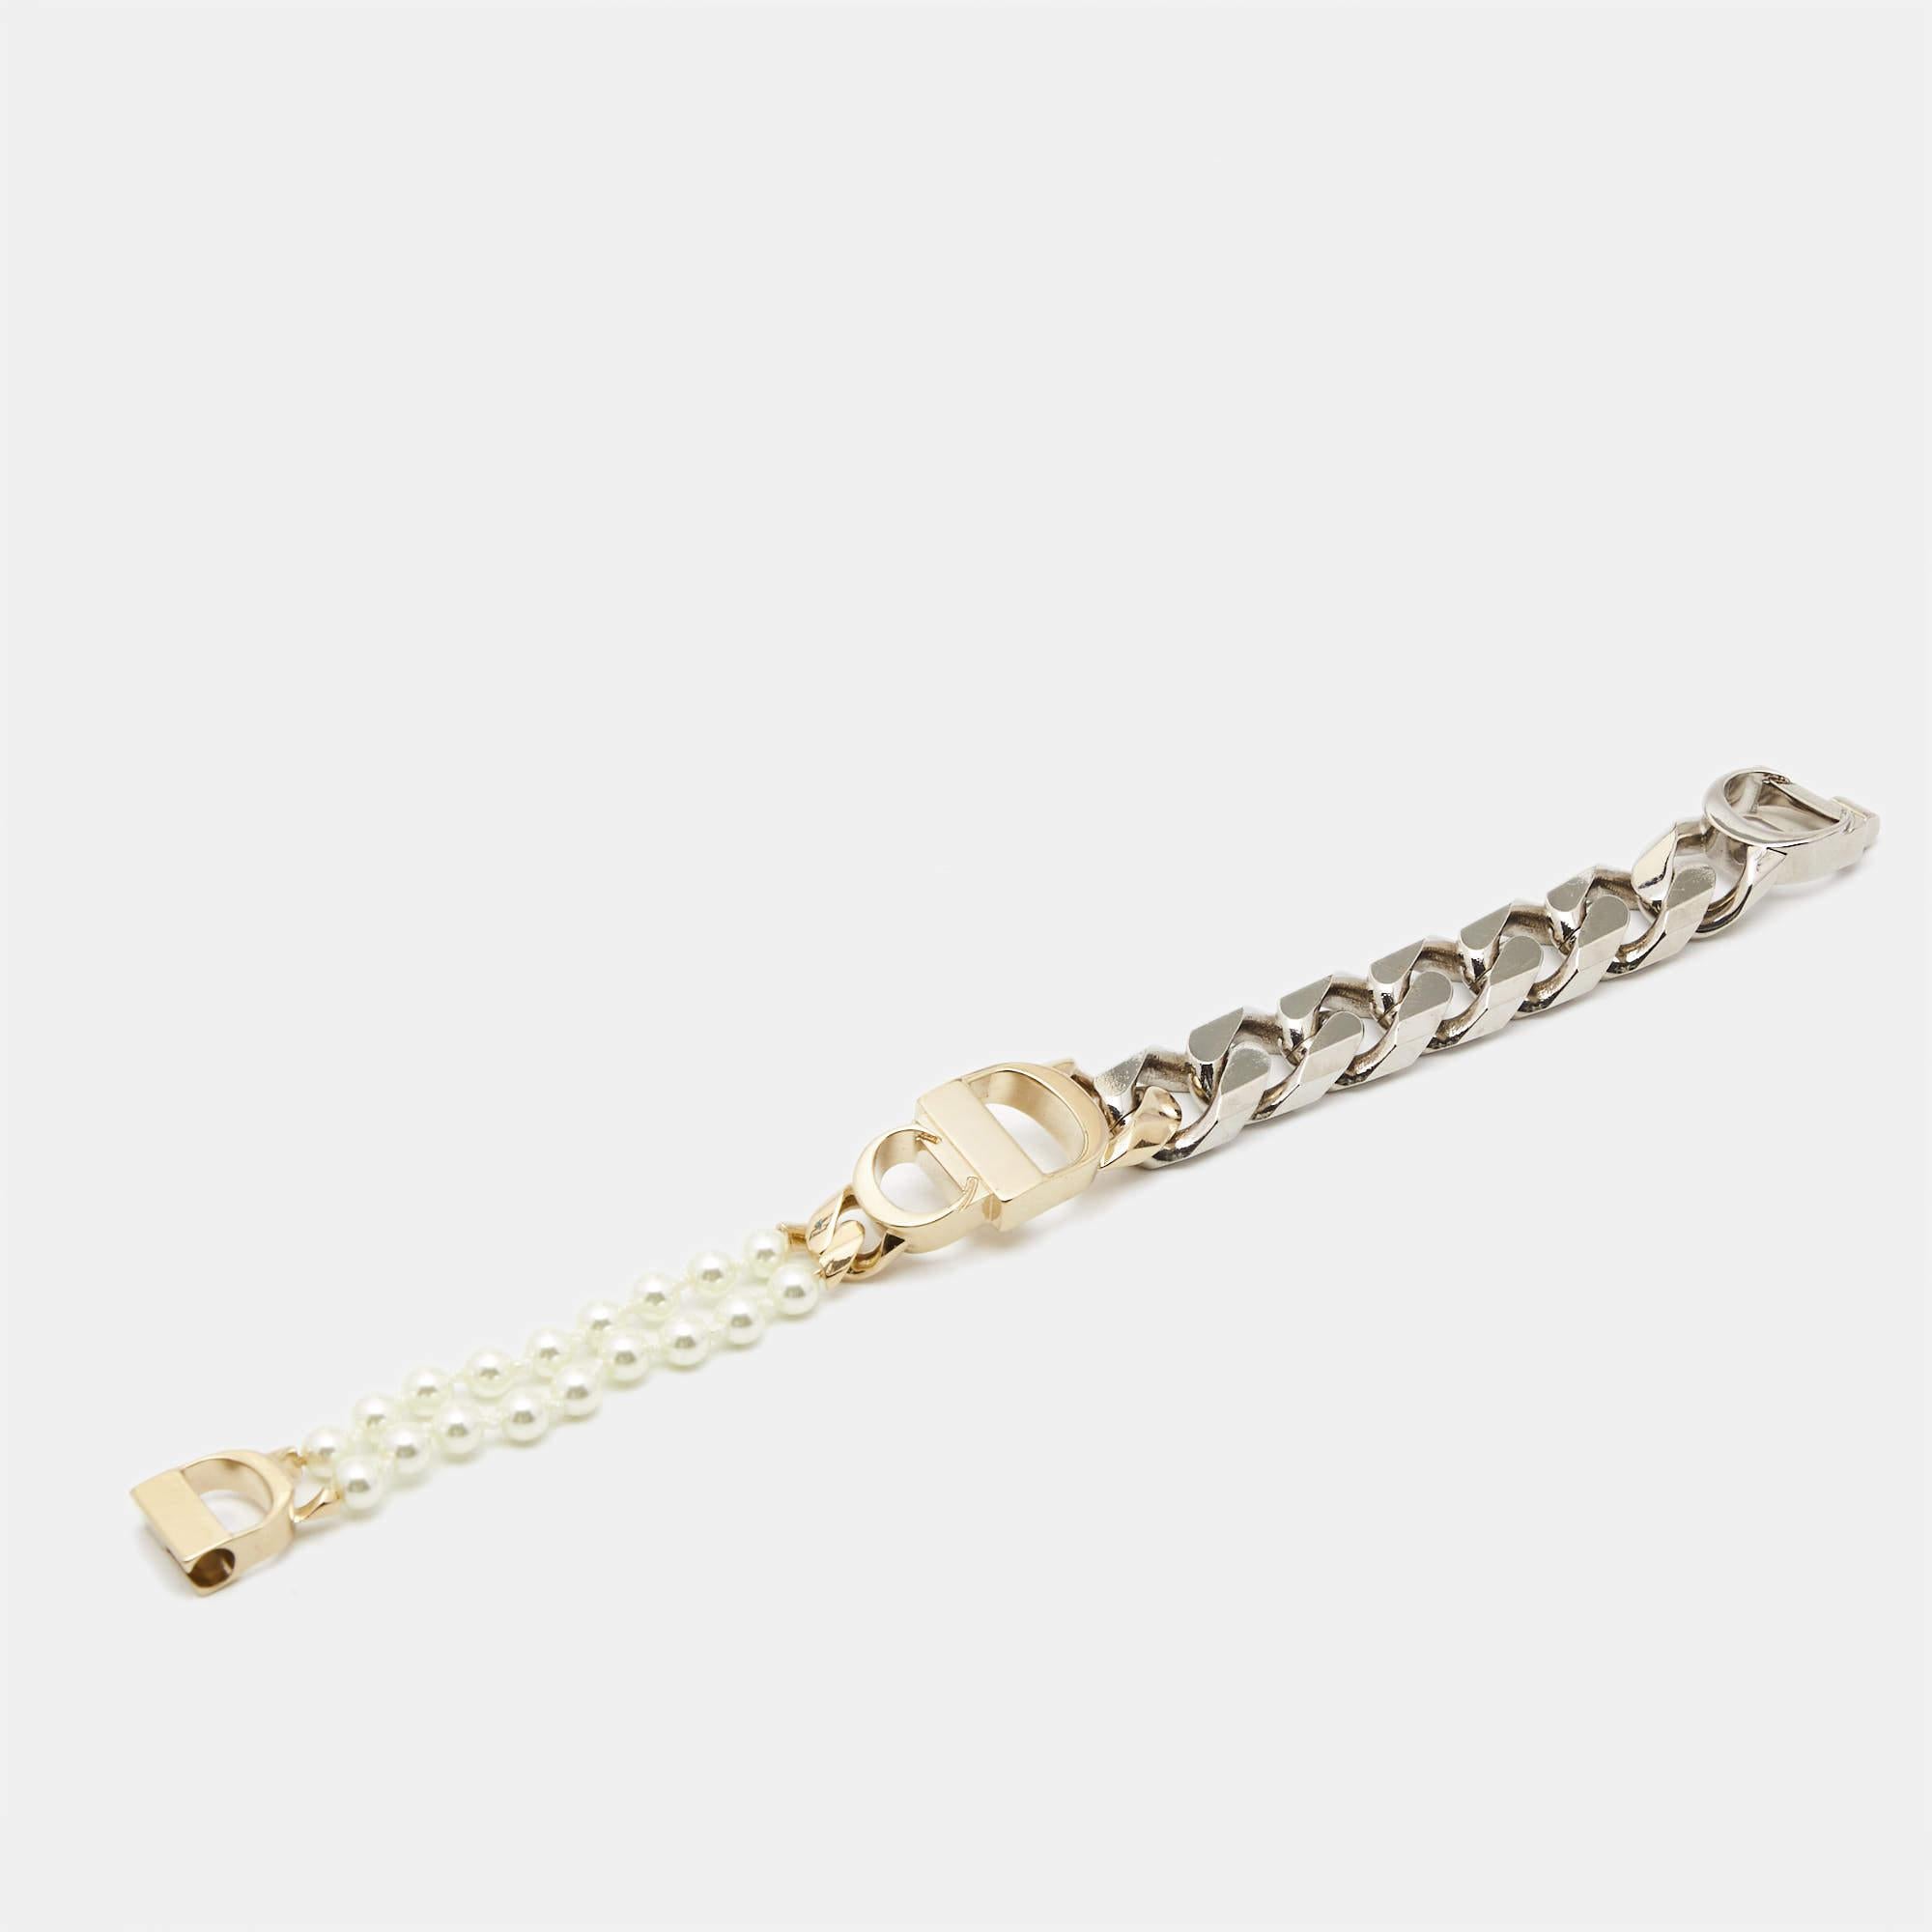 Um Sie auf die eleganteste Weise zu schmücken, präsentieren wir Ihnen dieses Armband von Dior x Sacai. Er ist mit wunderschönen Details versehen, die Ihren Look sofort aufwerten.

Enthält: Original-Staubbeutel, Original-Box